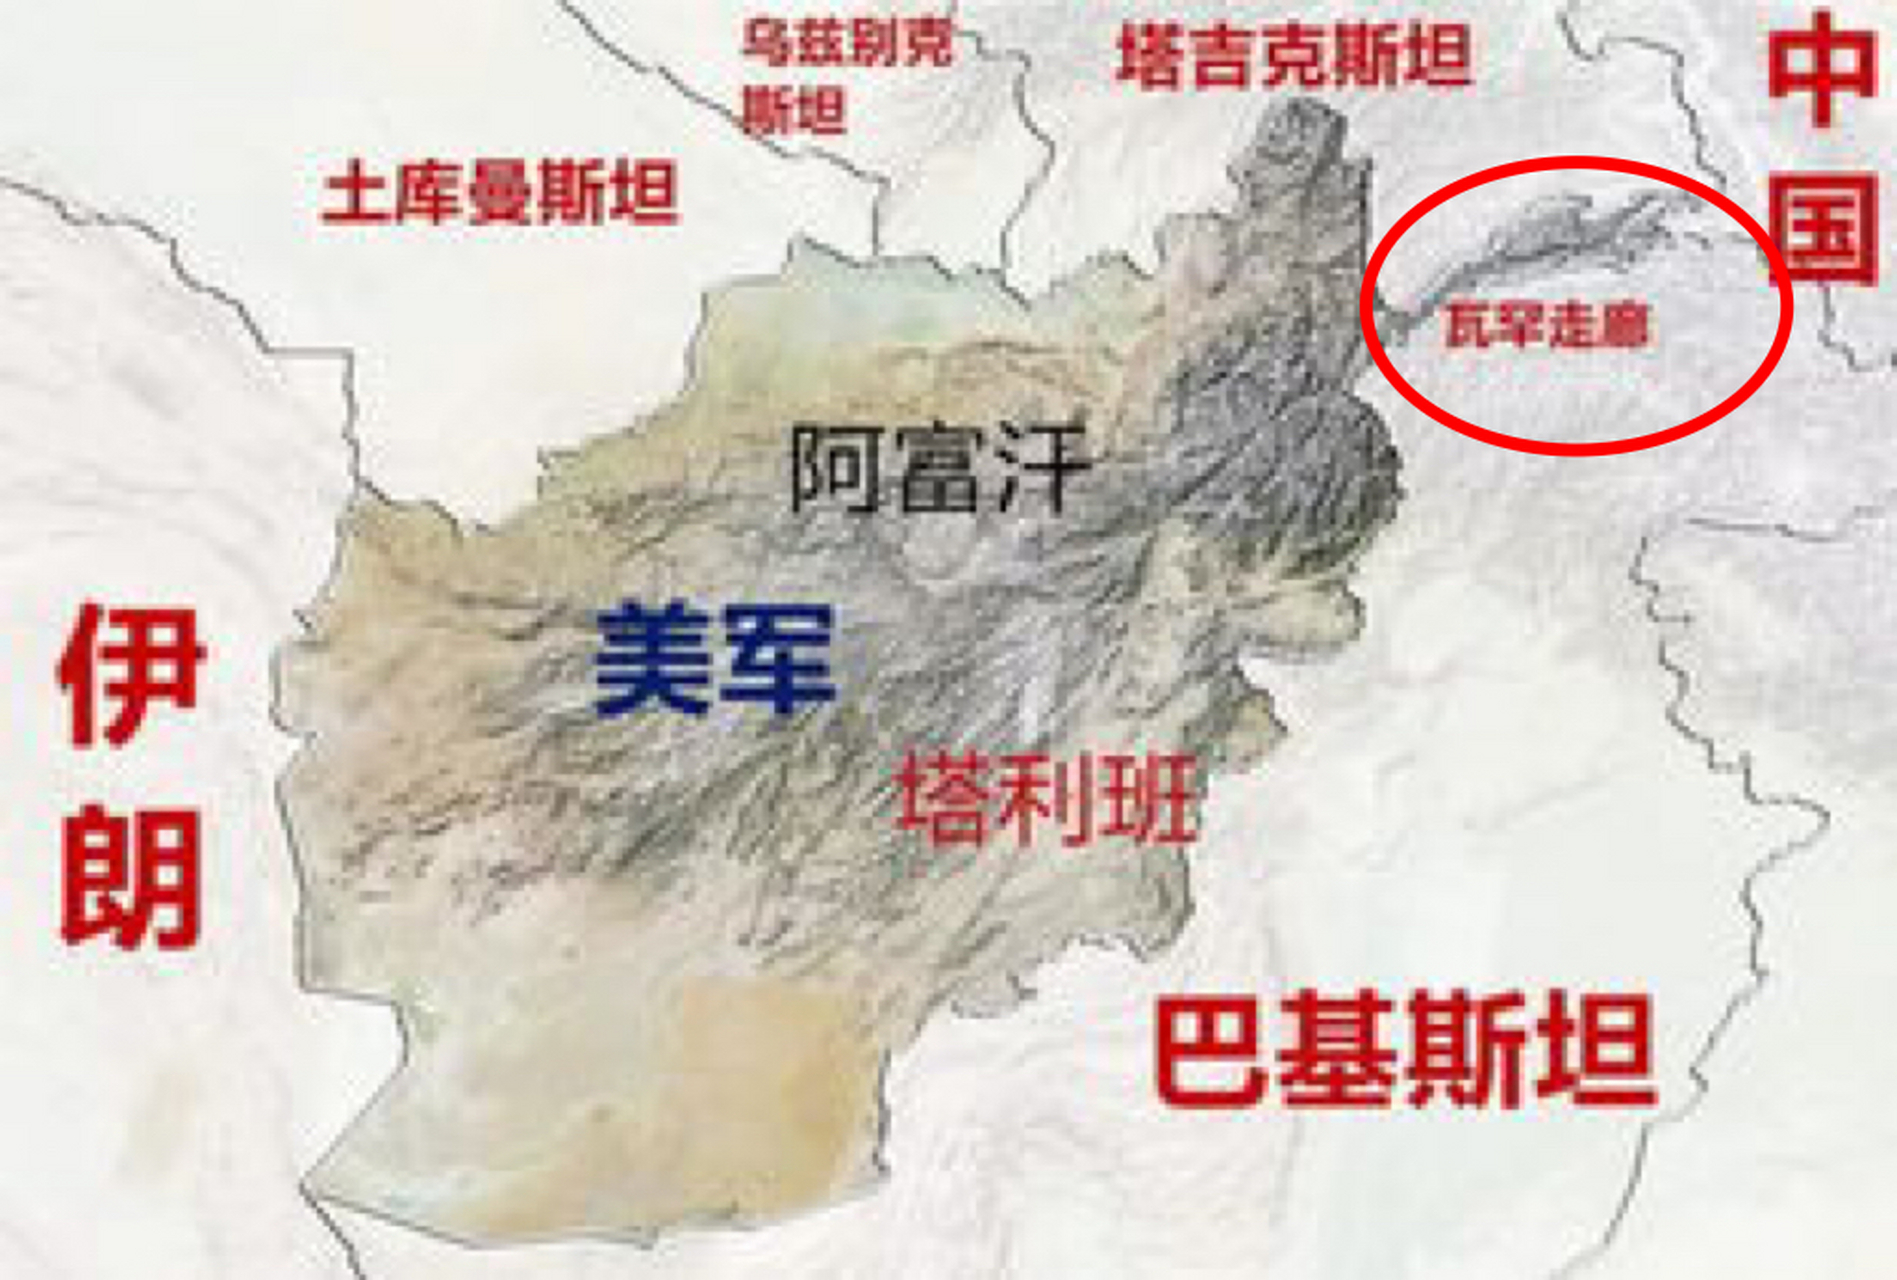 阿富汗和中国接壤吗图片